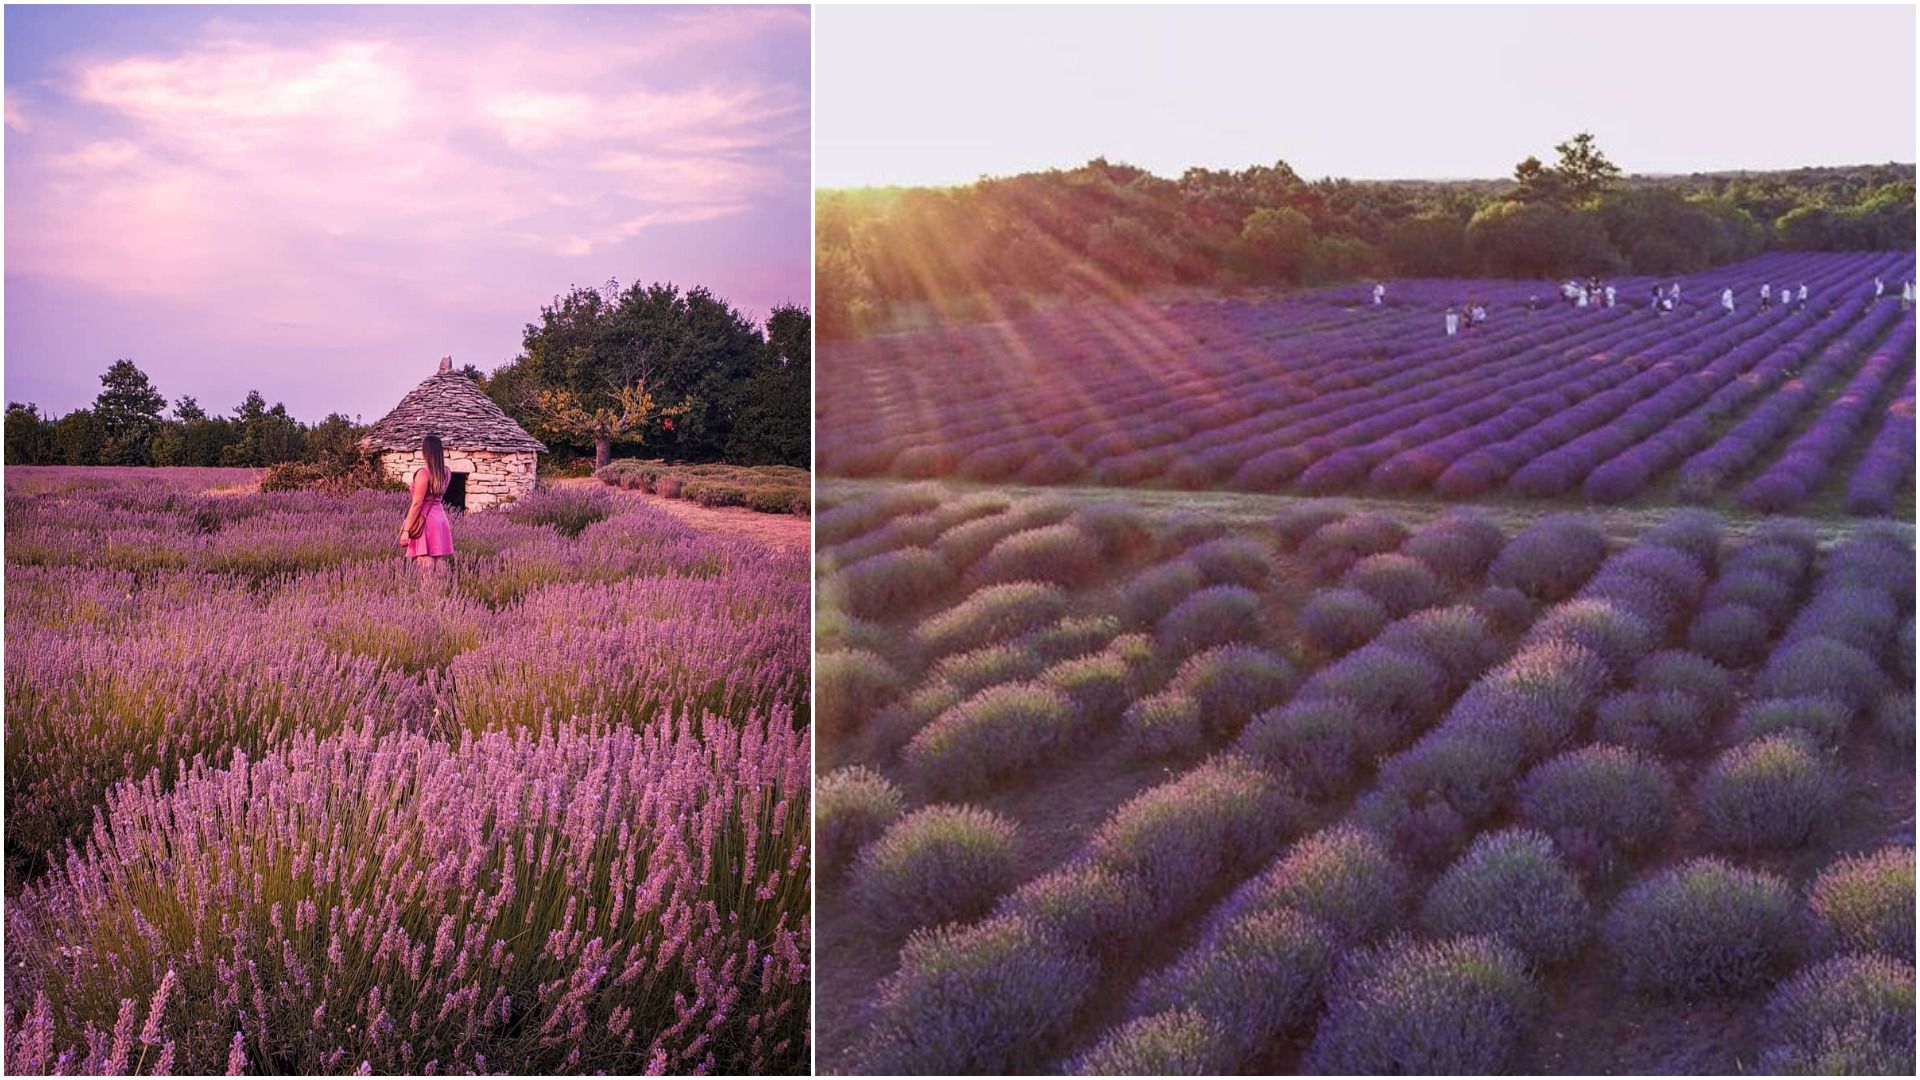 Pronašli smo najljepšu Instagramsku kulisu: Polje lavande u istarskom izletištu Pekići pravi je mali raj